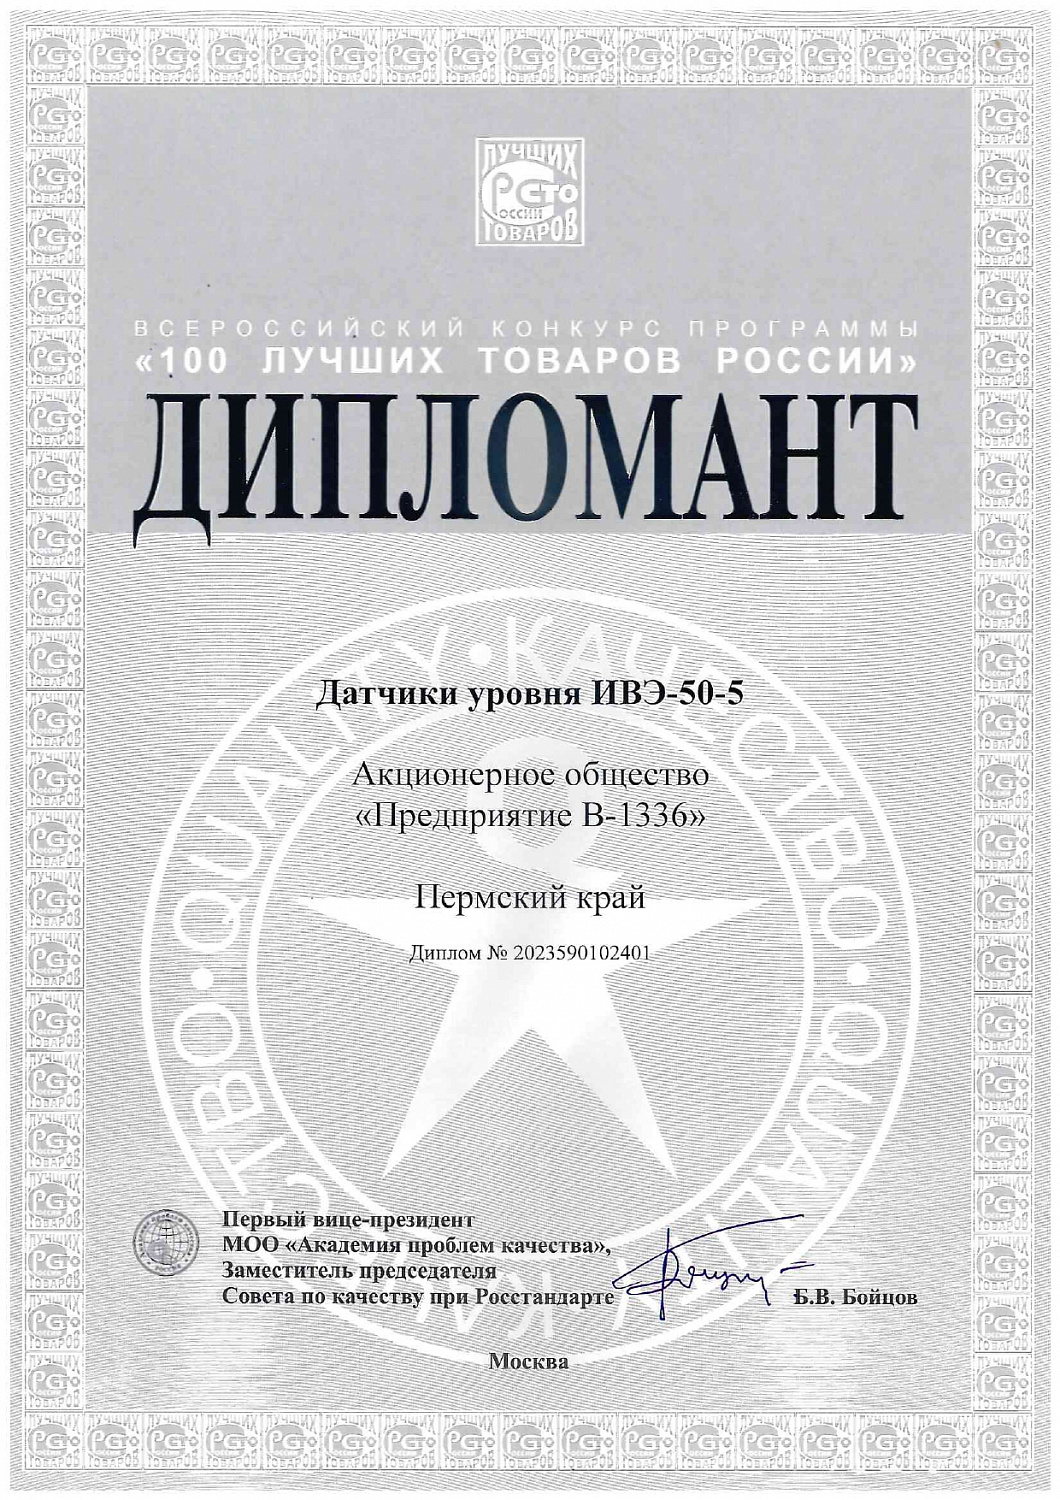 Датчик уровня ИВЭ-50-5 – лауреат конкурса «100 лучших товаров России»